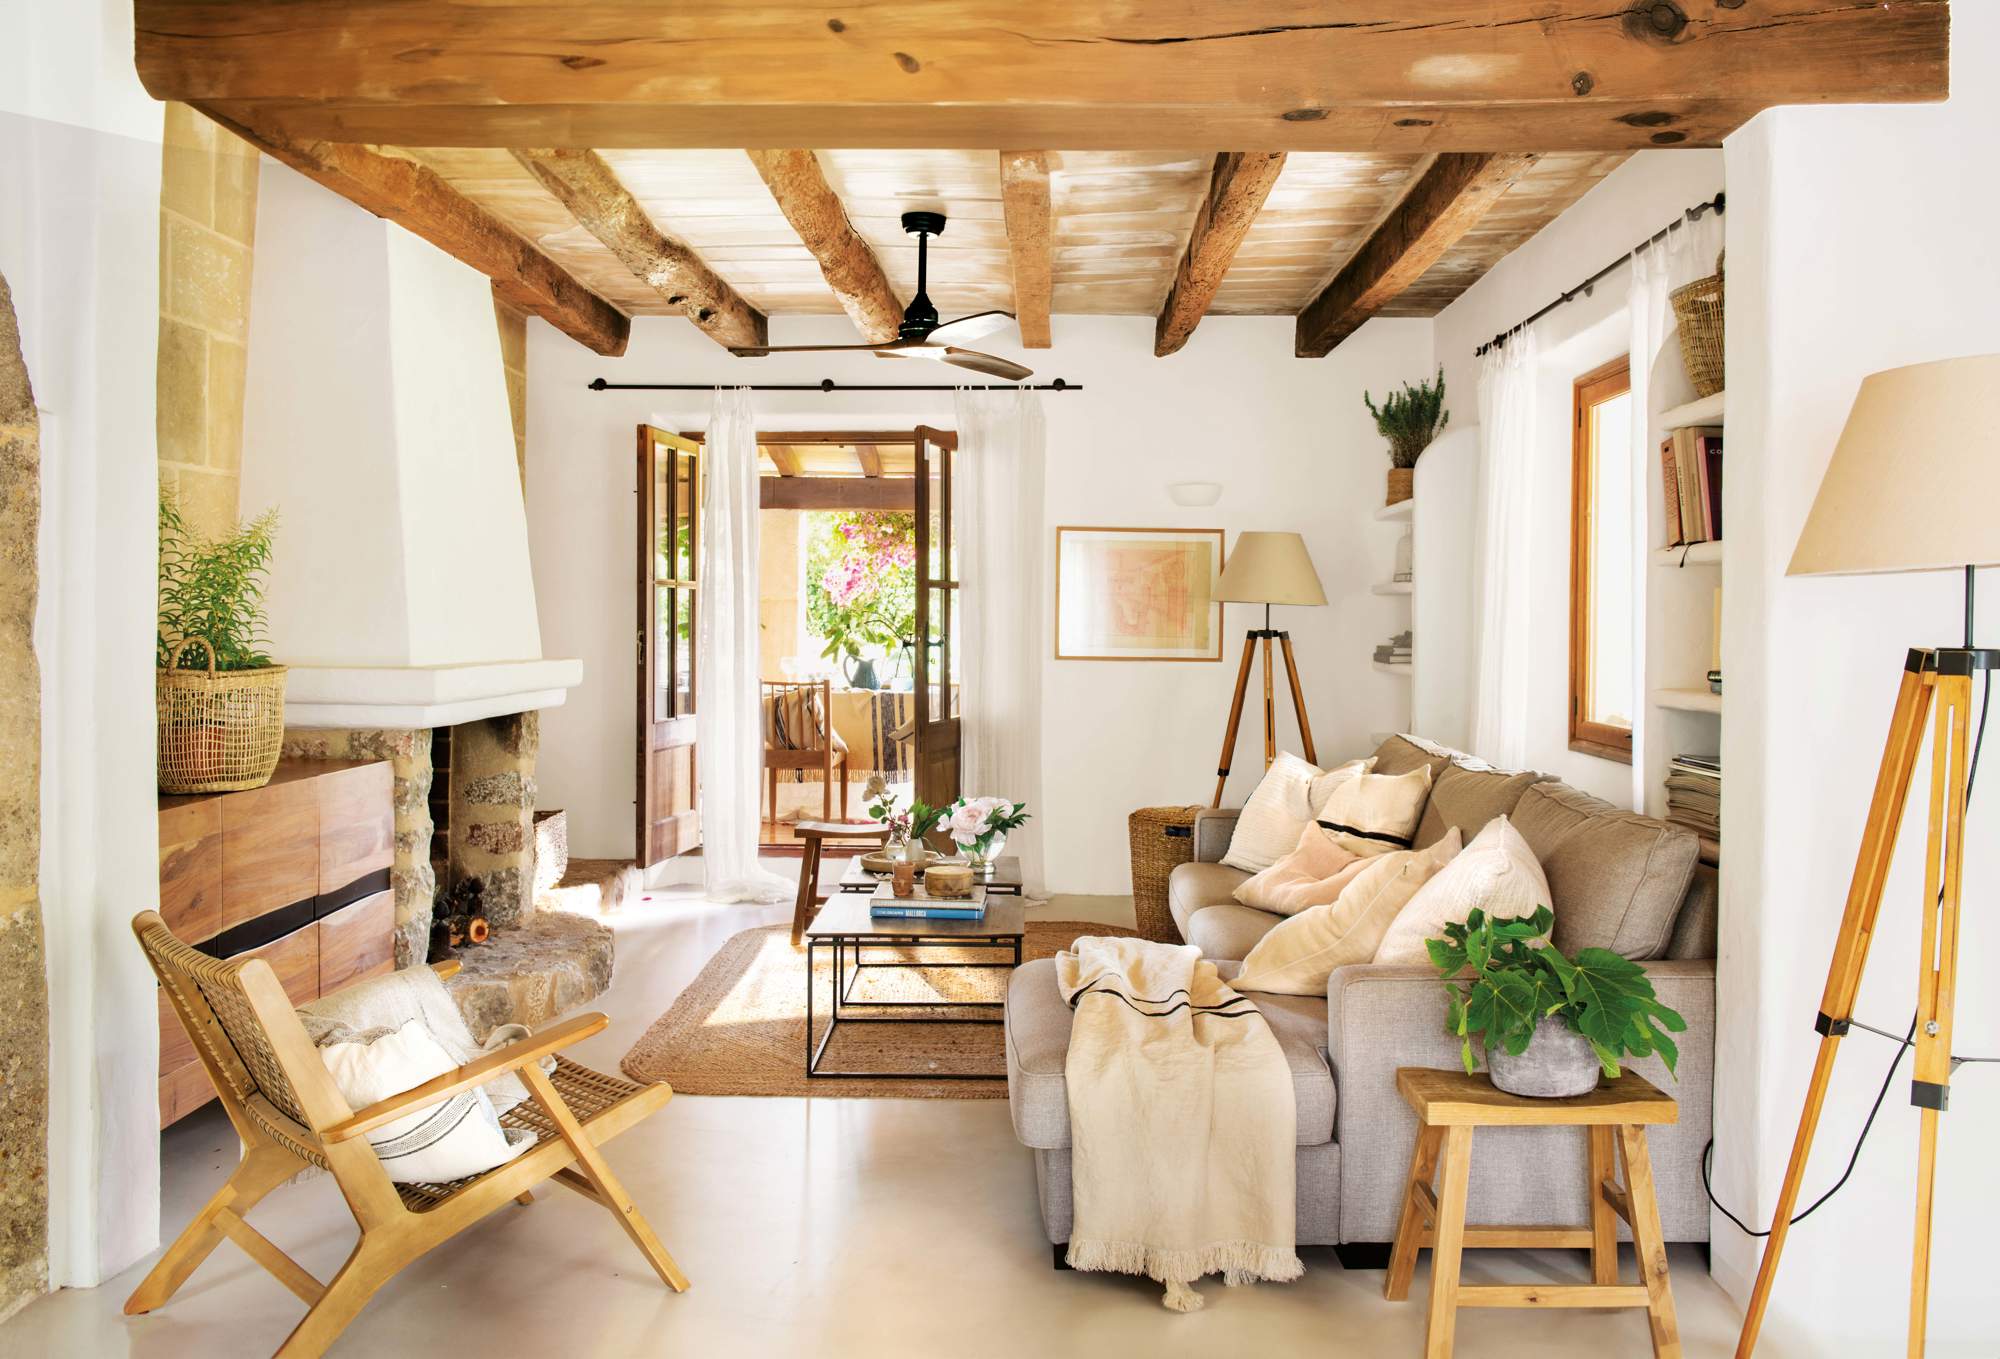 Salón pequeño con vigas de madera en el techo, chimenea, sofá con chaise longue, butaca y lámparas de pie